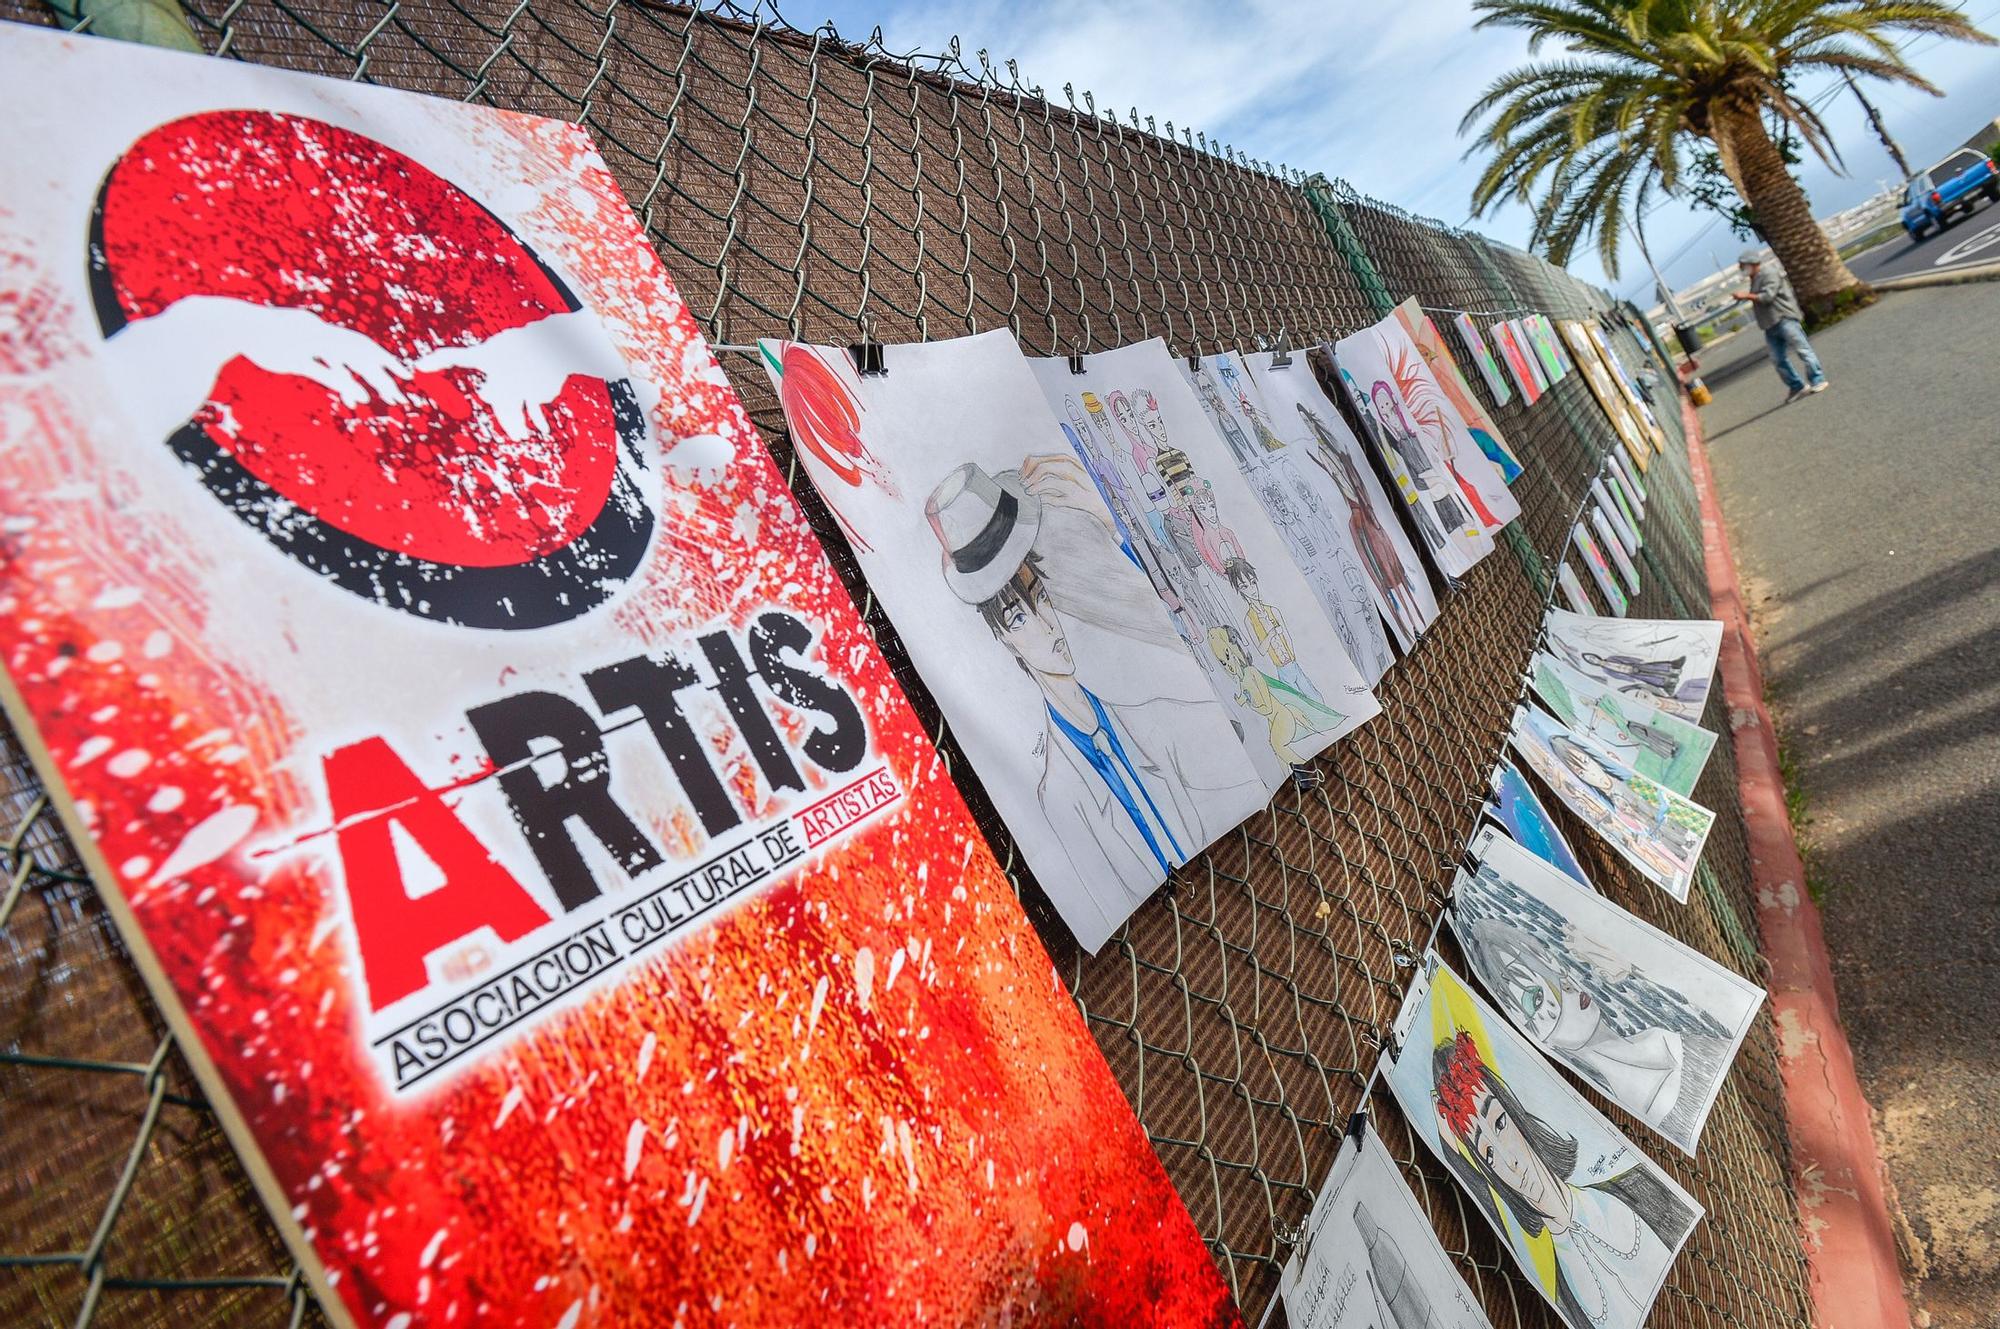 'Artis in vía', ruta de exposición en la calle, en Ingenio